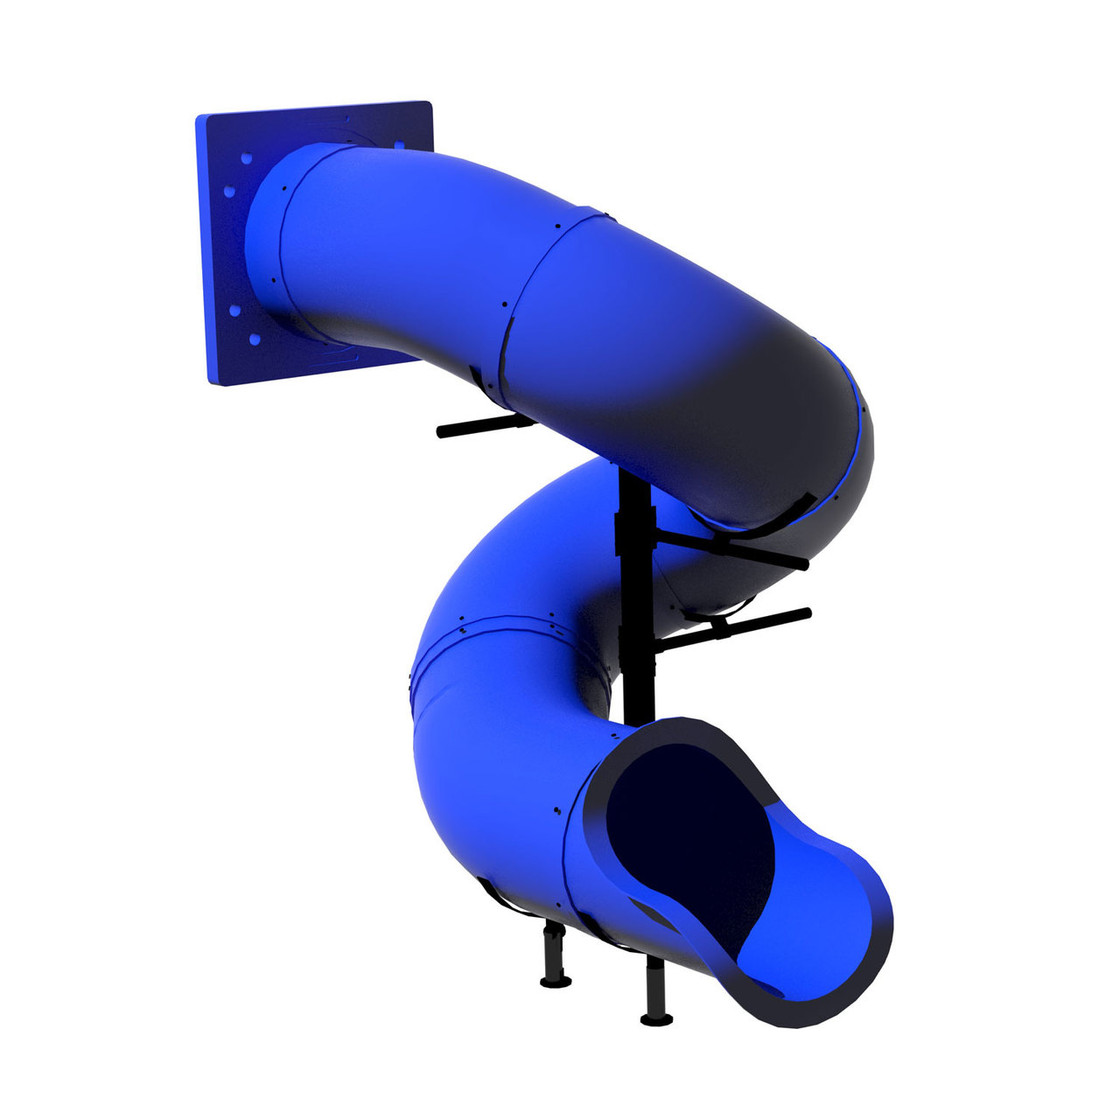 7' Spiral Tube Slide